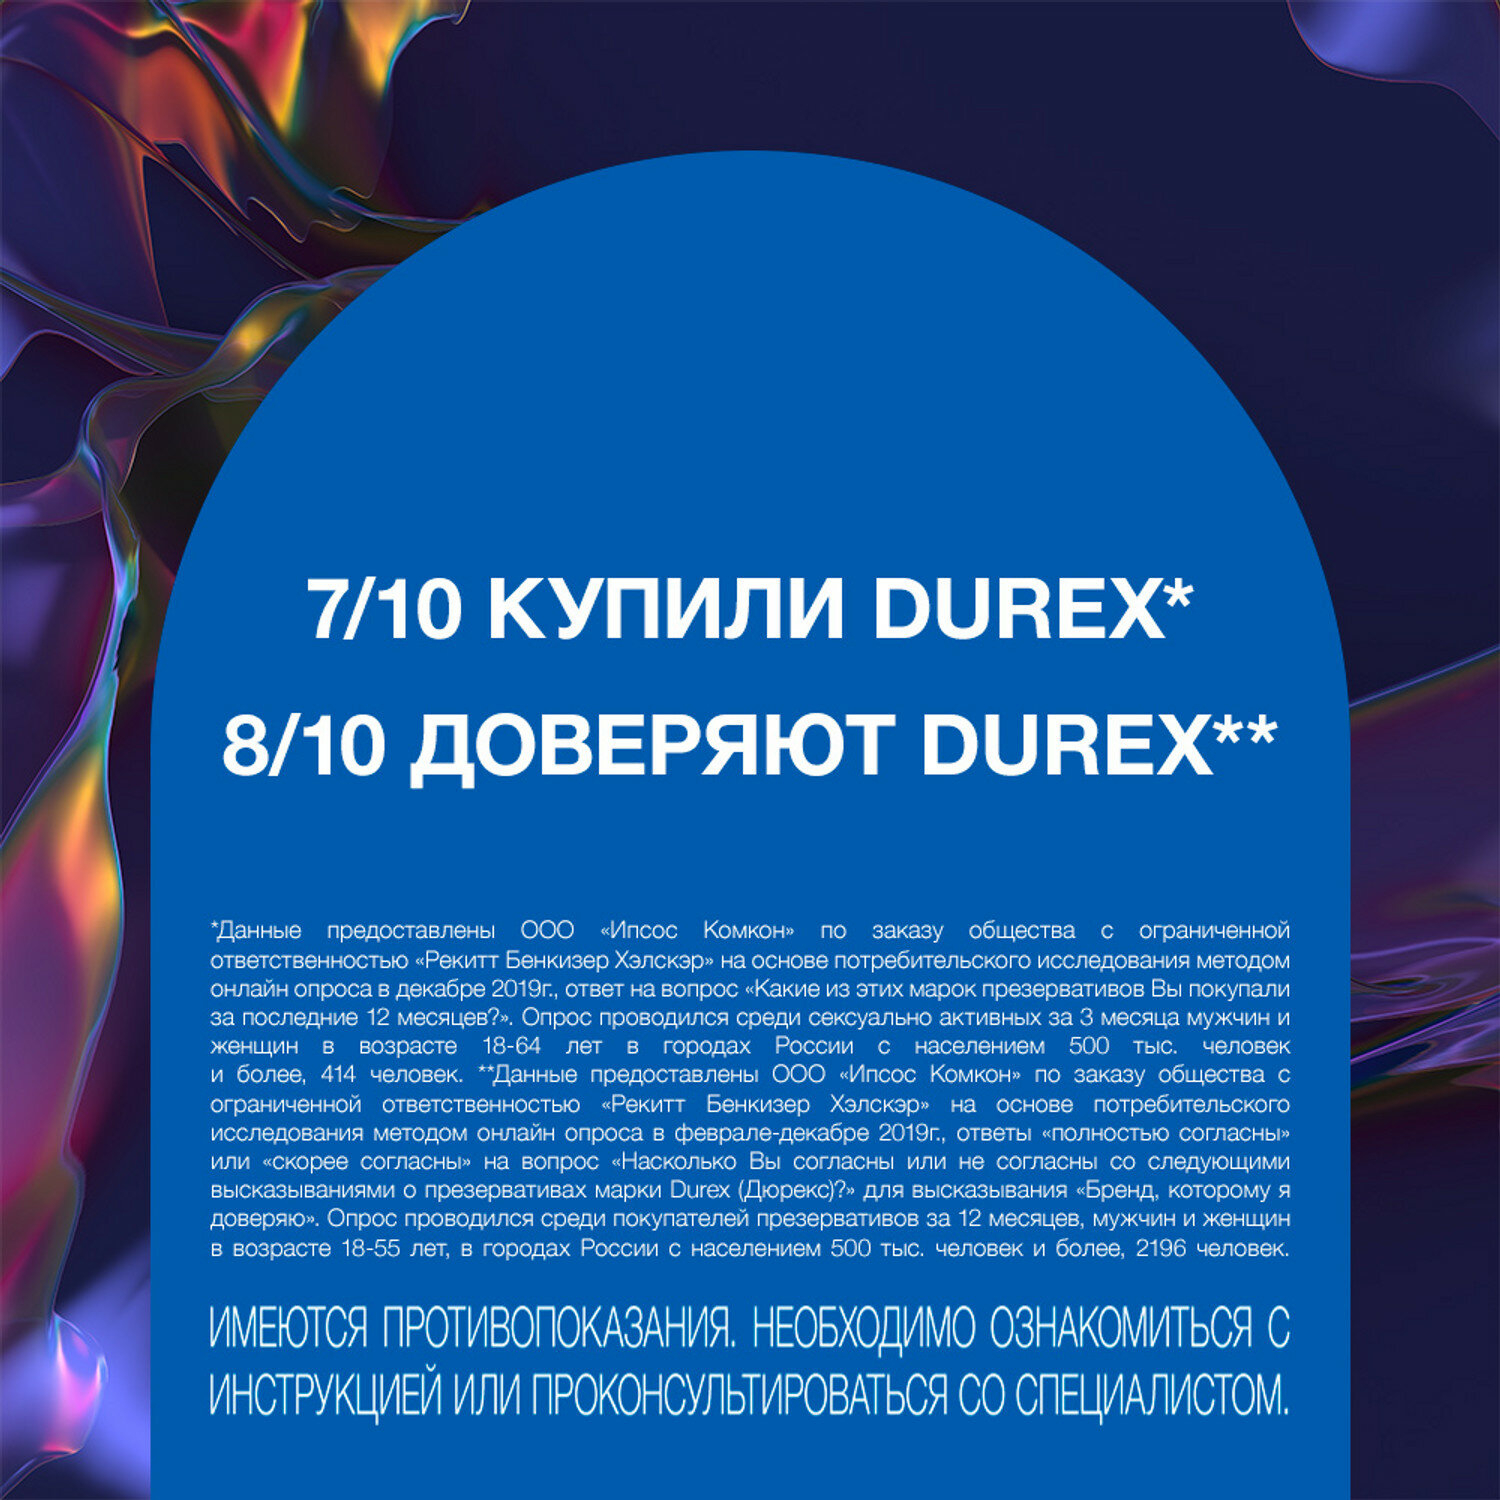 Презервативы Durex (Дюрекс) с анестетиком Infinity гладкие, вариант 2, 12 шт. Рекитт Бенкизер Хелскэар (ЮК) Лтд - фото №6